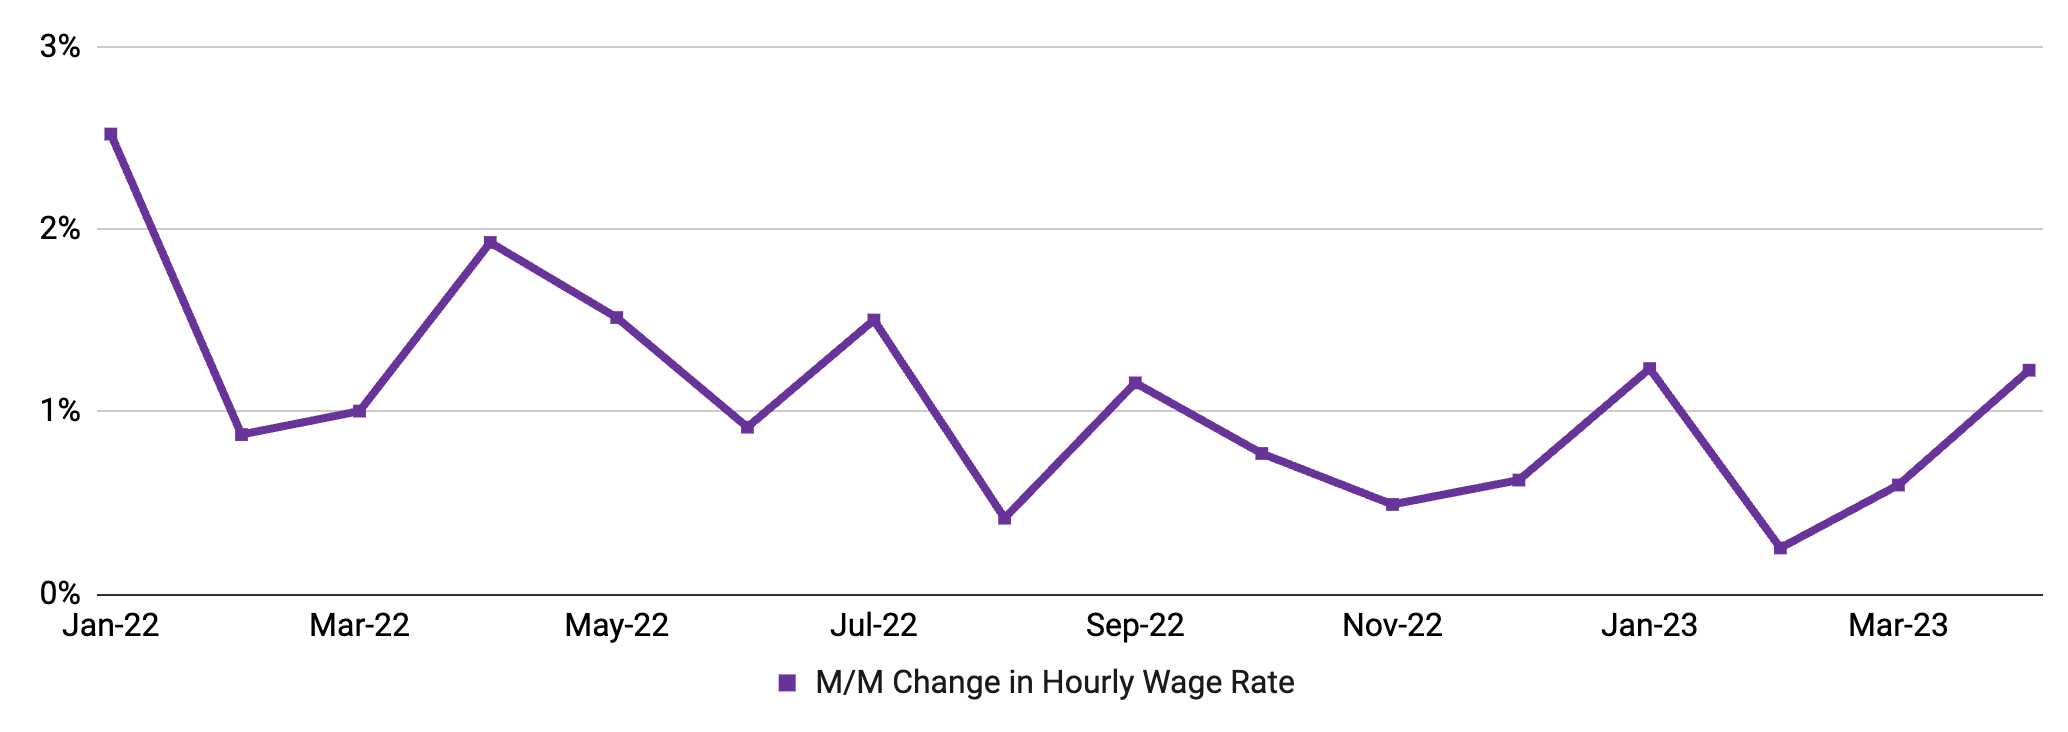 April MSHR 2023 - Wage inflation 2